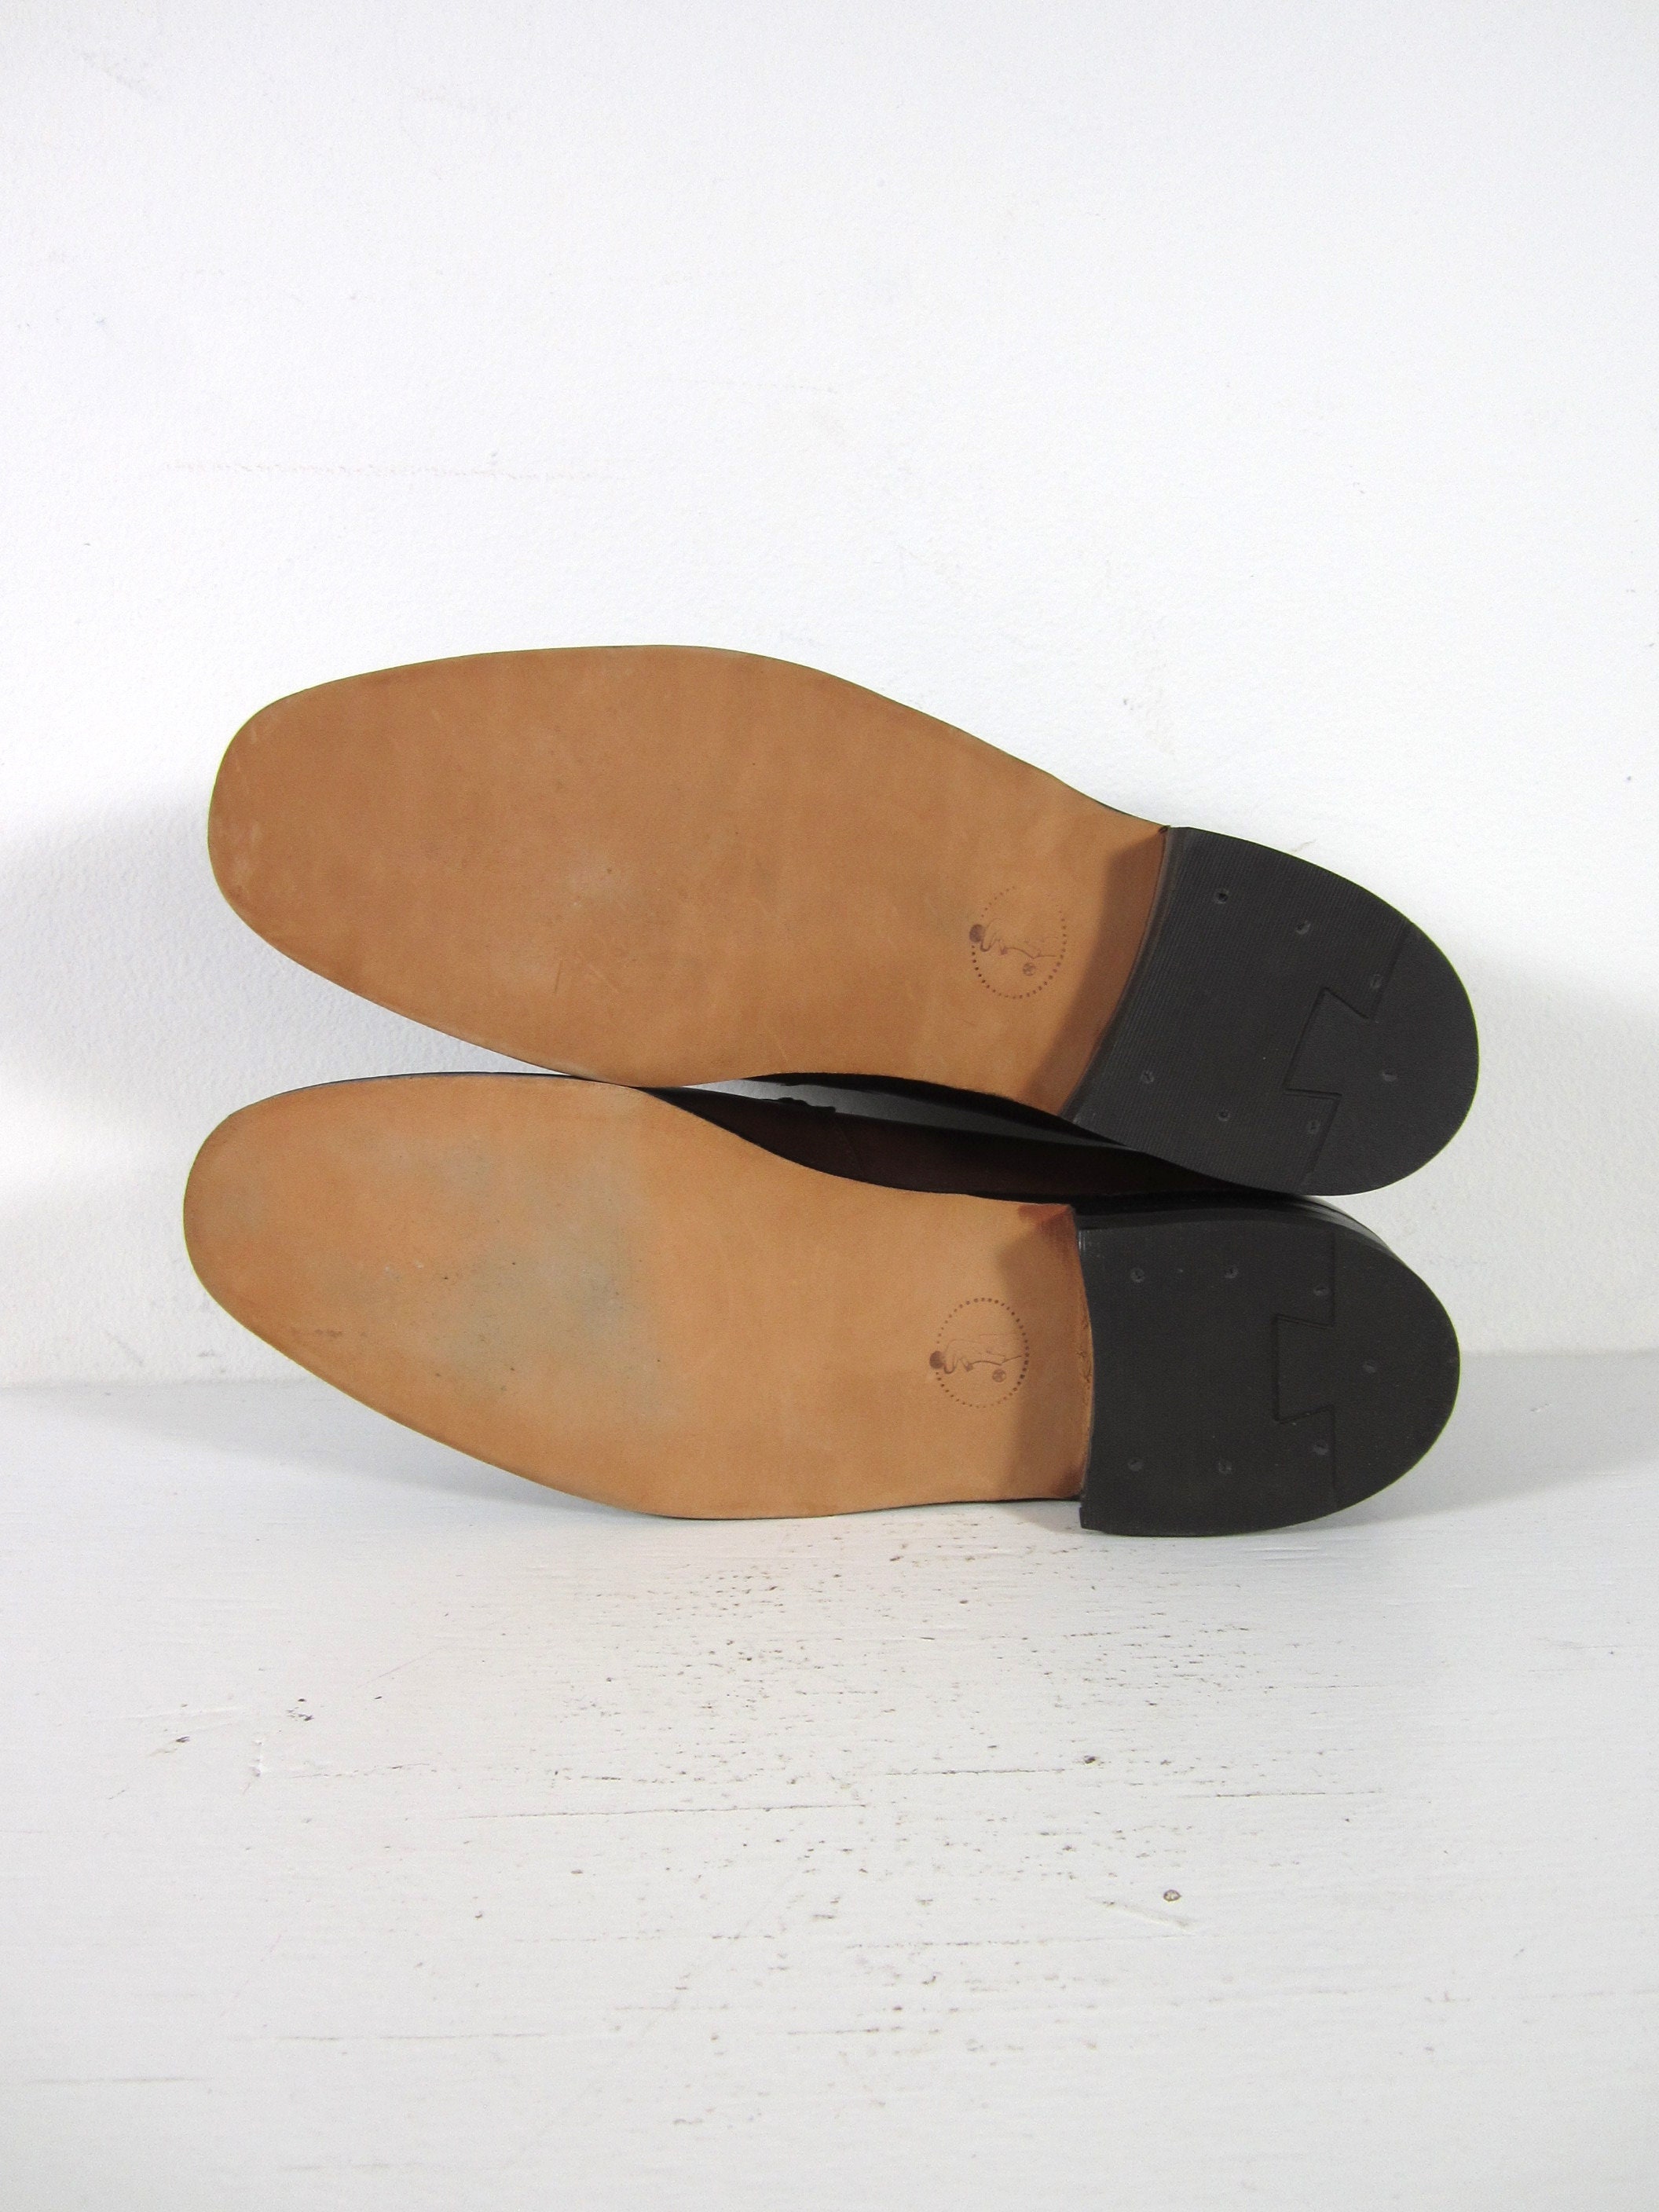 Maat 9 C Vintage NOS Lederen Instappers Jurk Schoenen Bruin Vorst Slip On Schoenen Herenschoenen Loafers & Instappers 